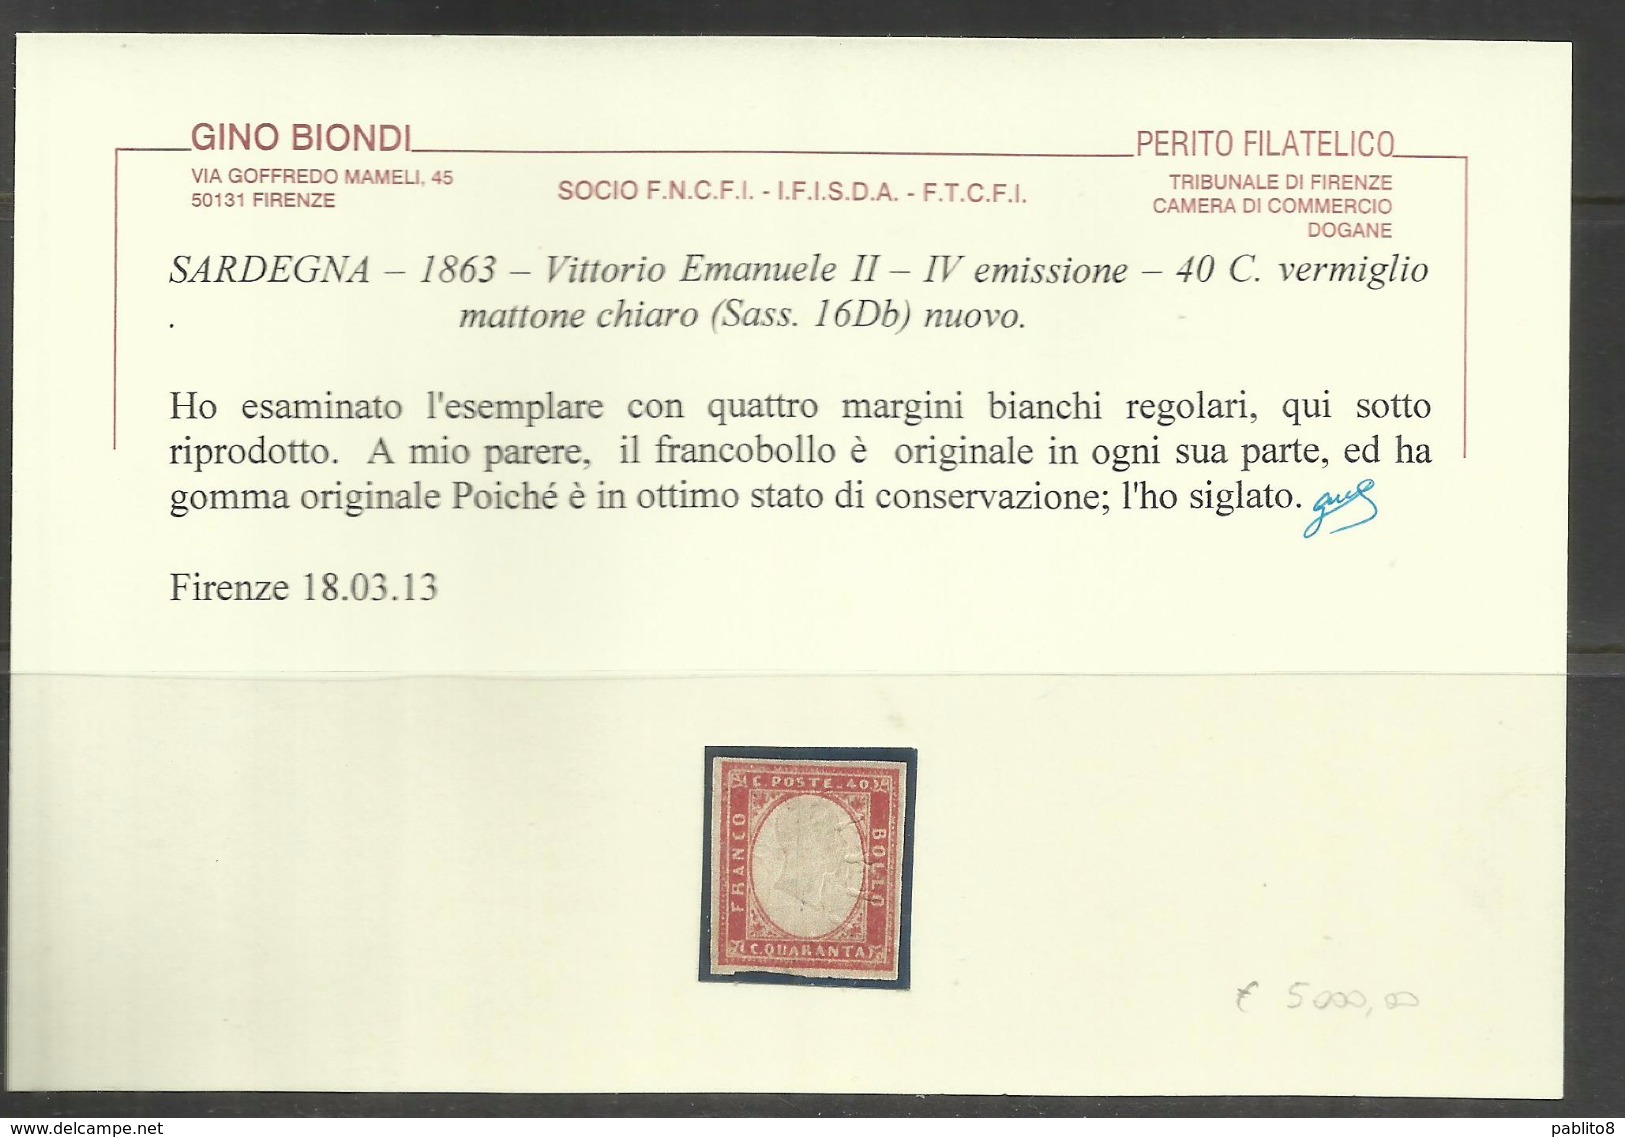 ANTICHI STATI SARDEGNA 1861 VITTORIO EMANUELE IV EMISSIONE CENT 40 40c VERMIGLIO MATTONE CHIARO MLH - Sardinia